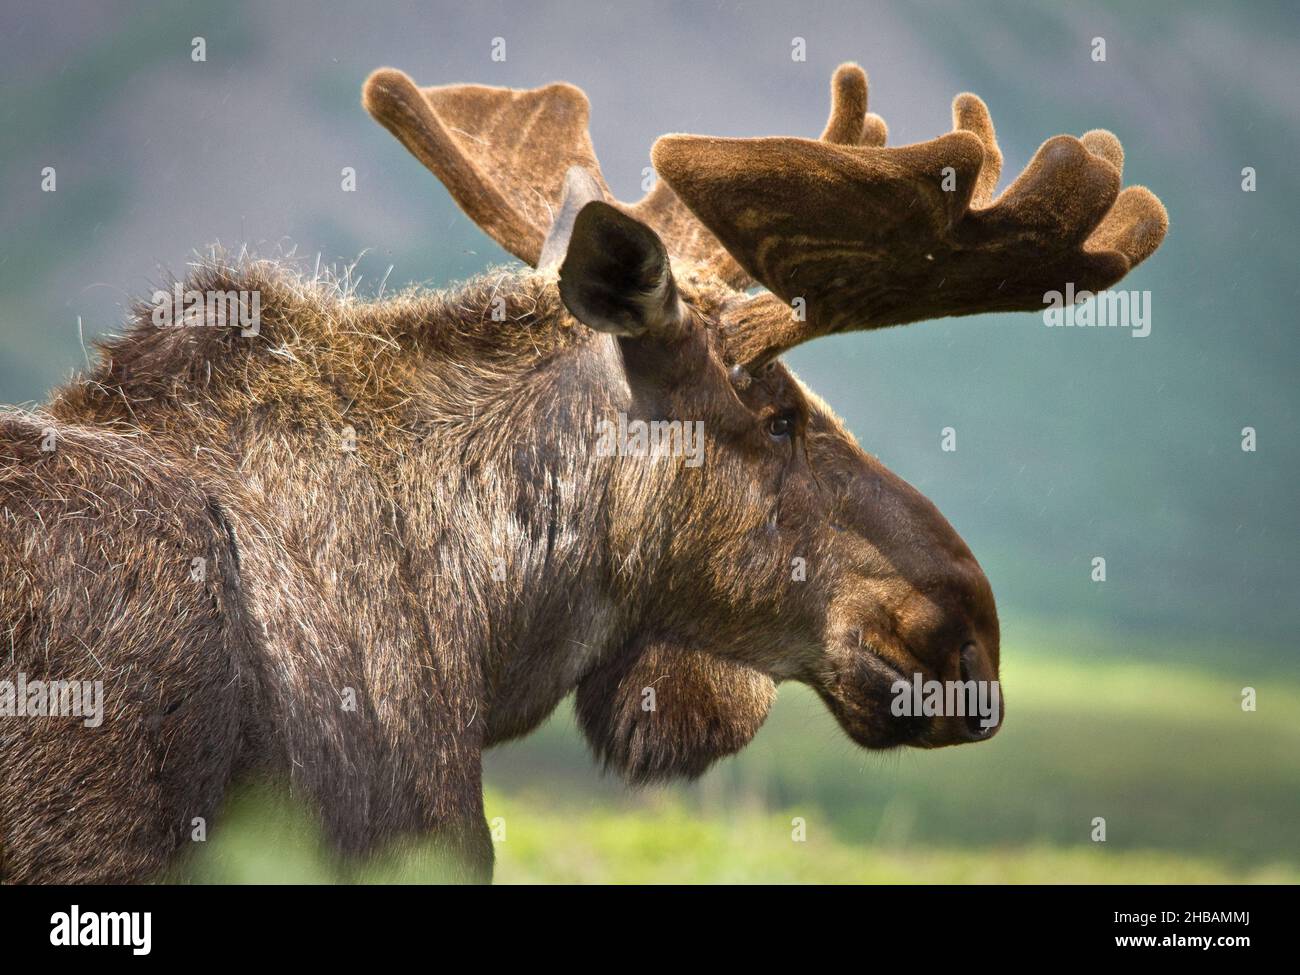 Profil eines Elches. Denali National Park & Preserve Alaska, Vereinigte Staaten von Amerika. Eine einzigartige, optimierte Version eines Bildes von NPS Ranger JW Frank; Quelle: NPS/Jacob W. Frank Stockfoto